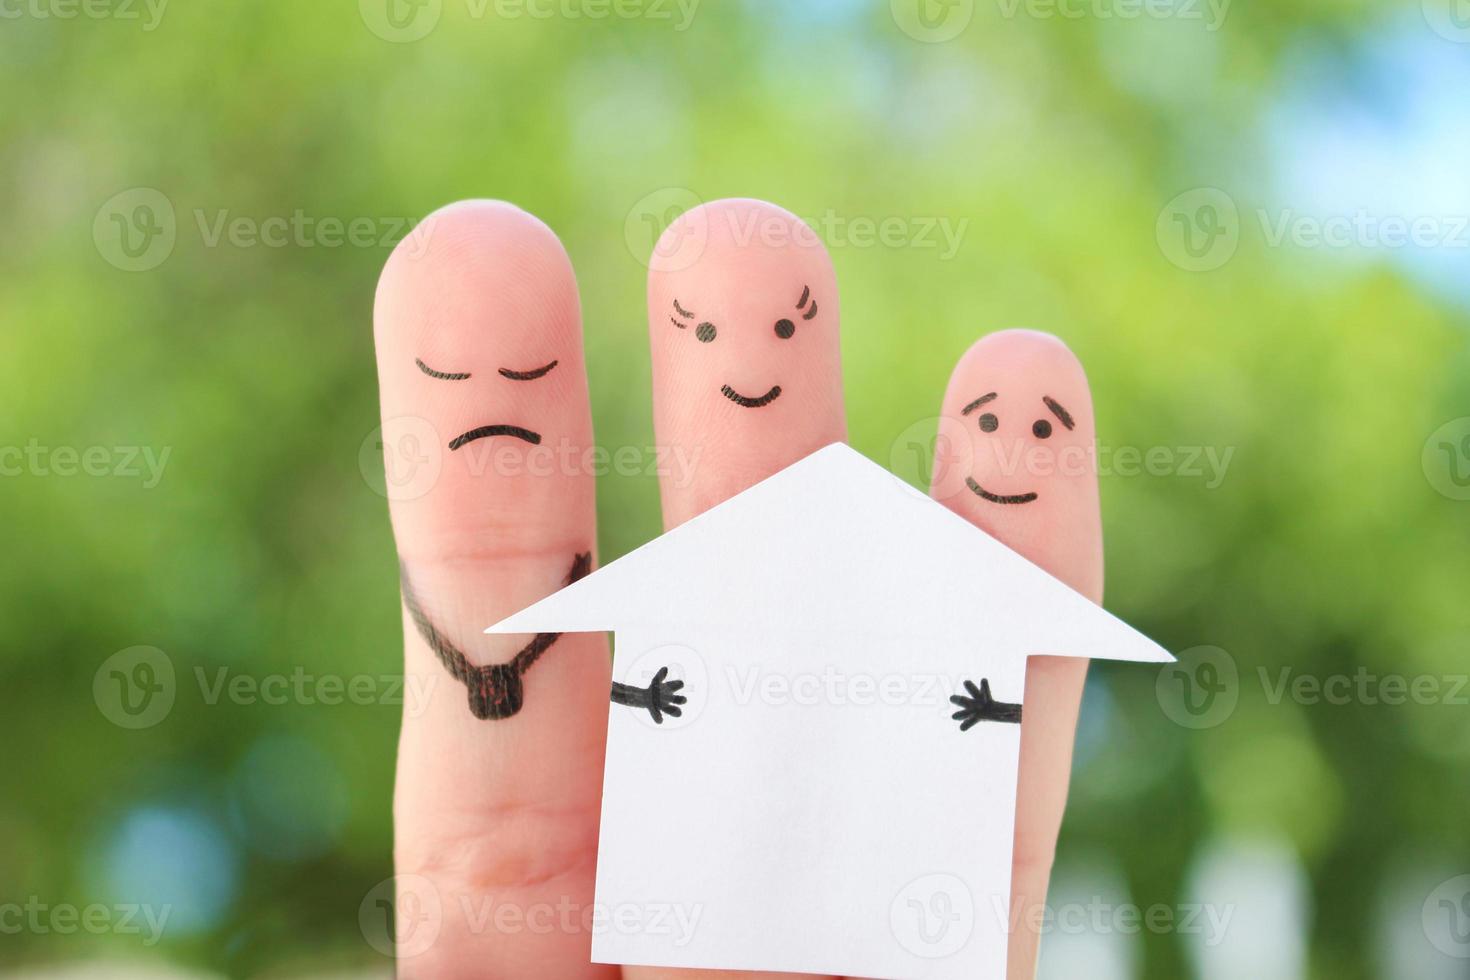 dedos arte do família durante briga. conceito do homem e mulher dividir casa depois de divórcio. foto